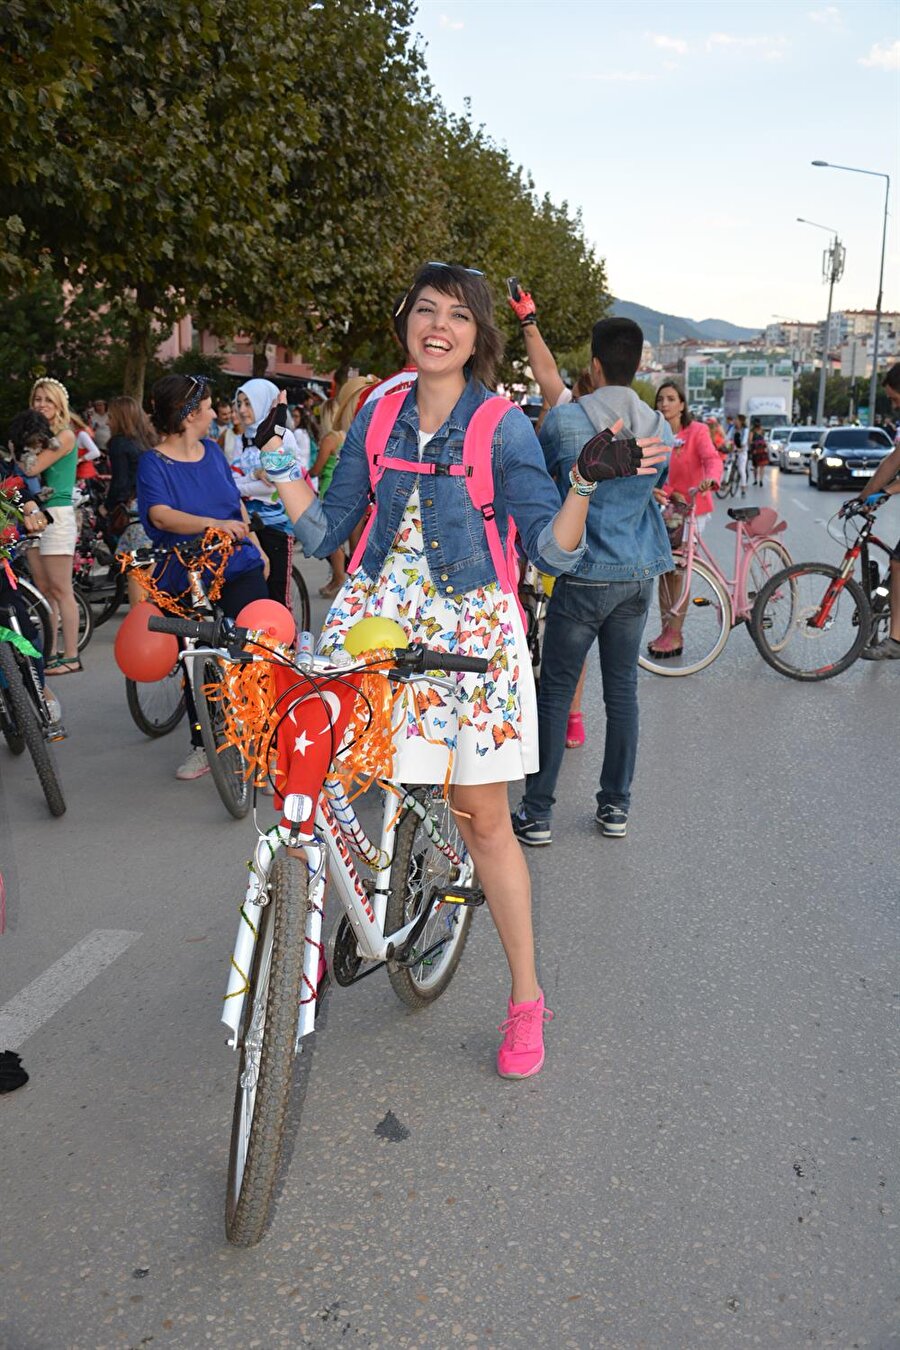 Trafikte bisikletin daha çok olduğu bir dünya
Bisikletlerin trafikte daha çok olduğu bir dünya istediklerini belirten kadınlar, Dünya Otomobilsiz Kentler Günü'ne vurgu için böyle bir organizasyon yaptıklarını söylüyor.